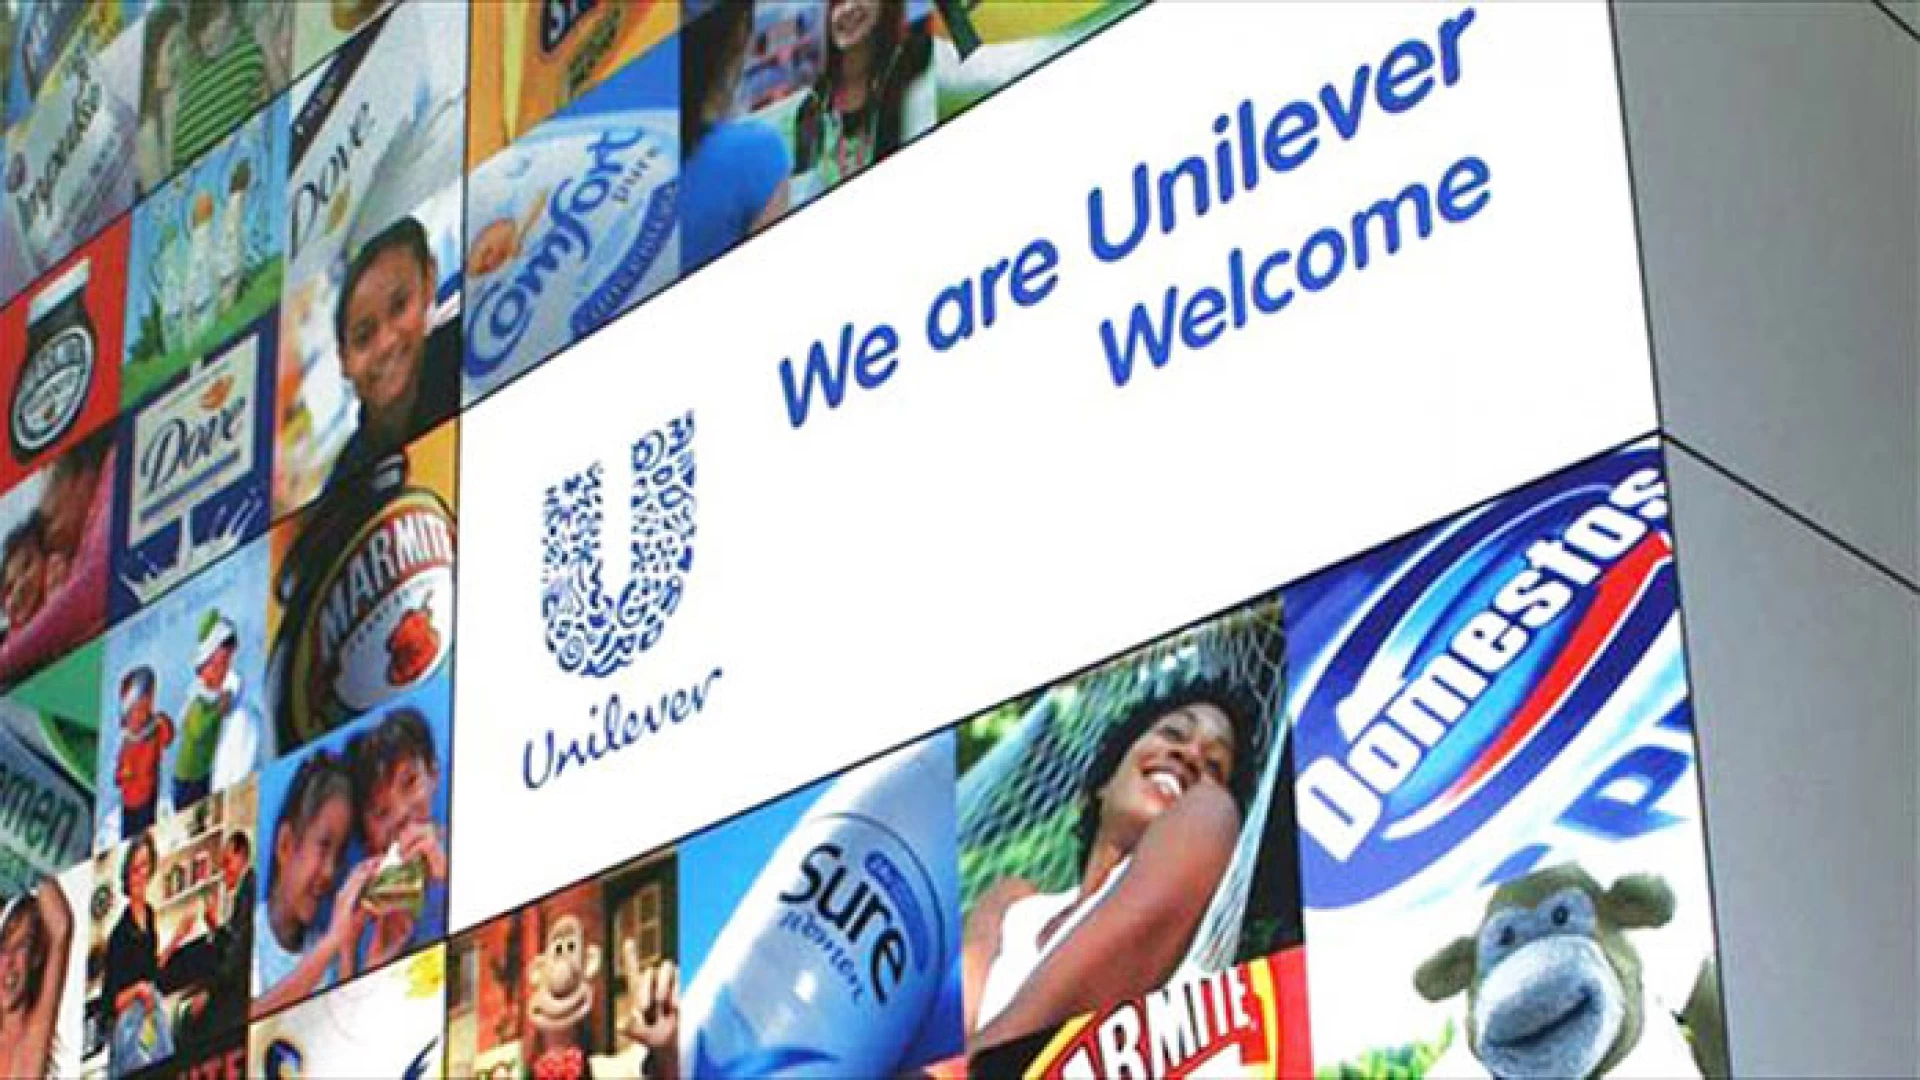 Pozzilli: cala la produzione , Unilever annuncia 41 licenziamenti. Il settore delle produzione dei detergenti in netto calo.